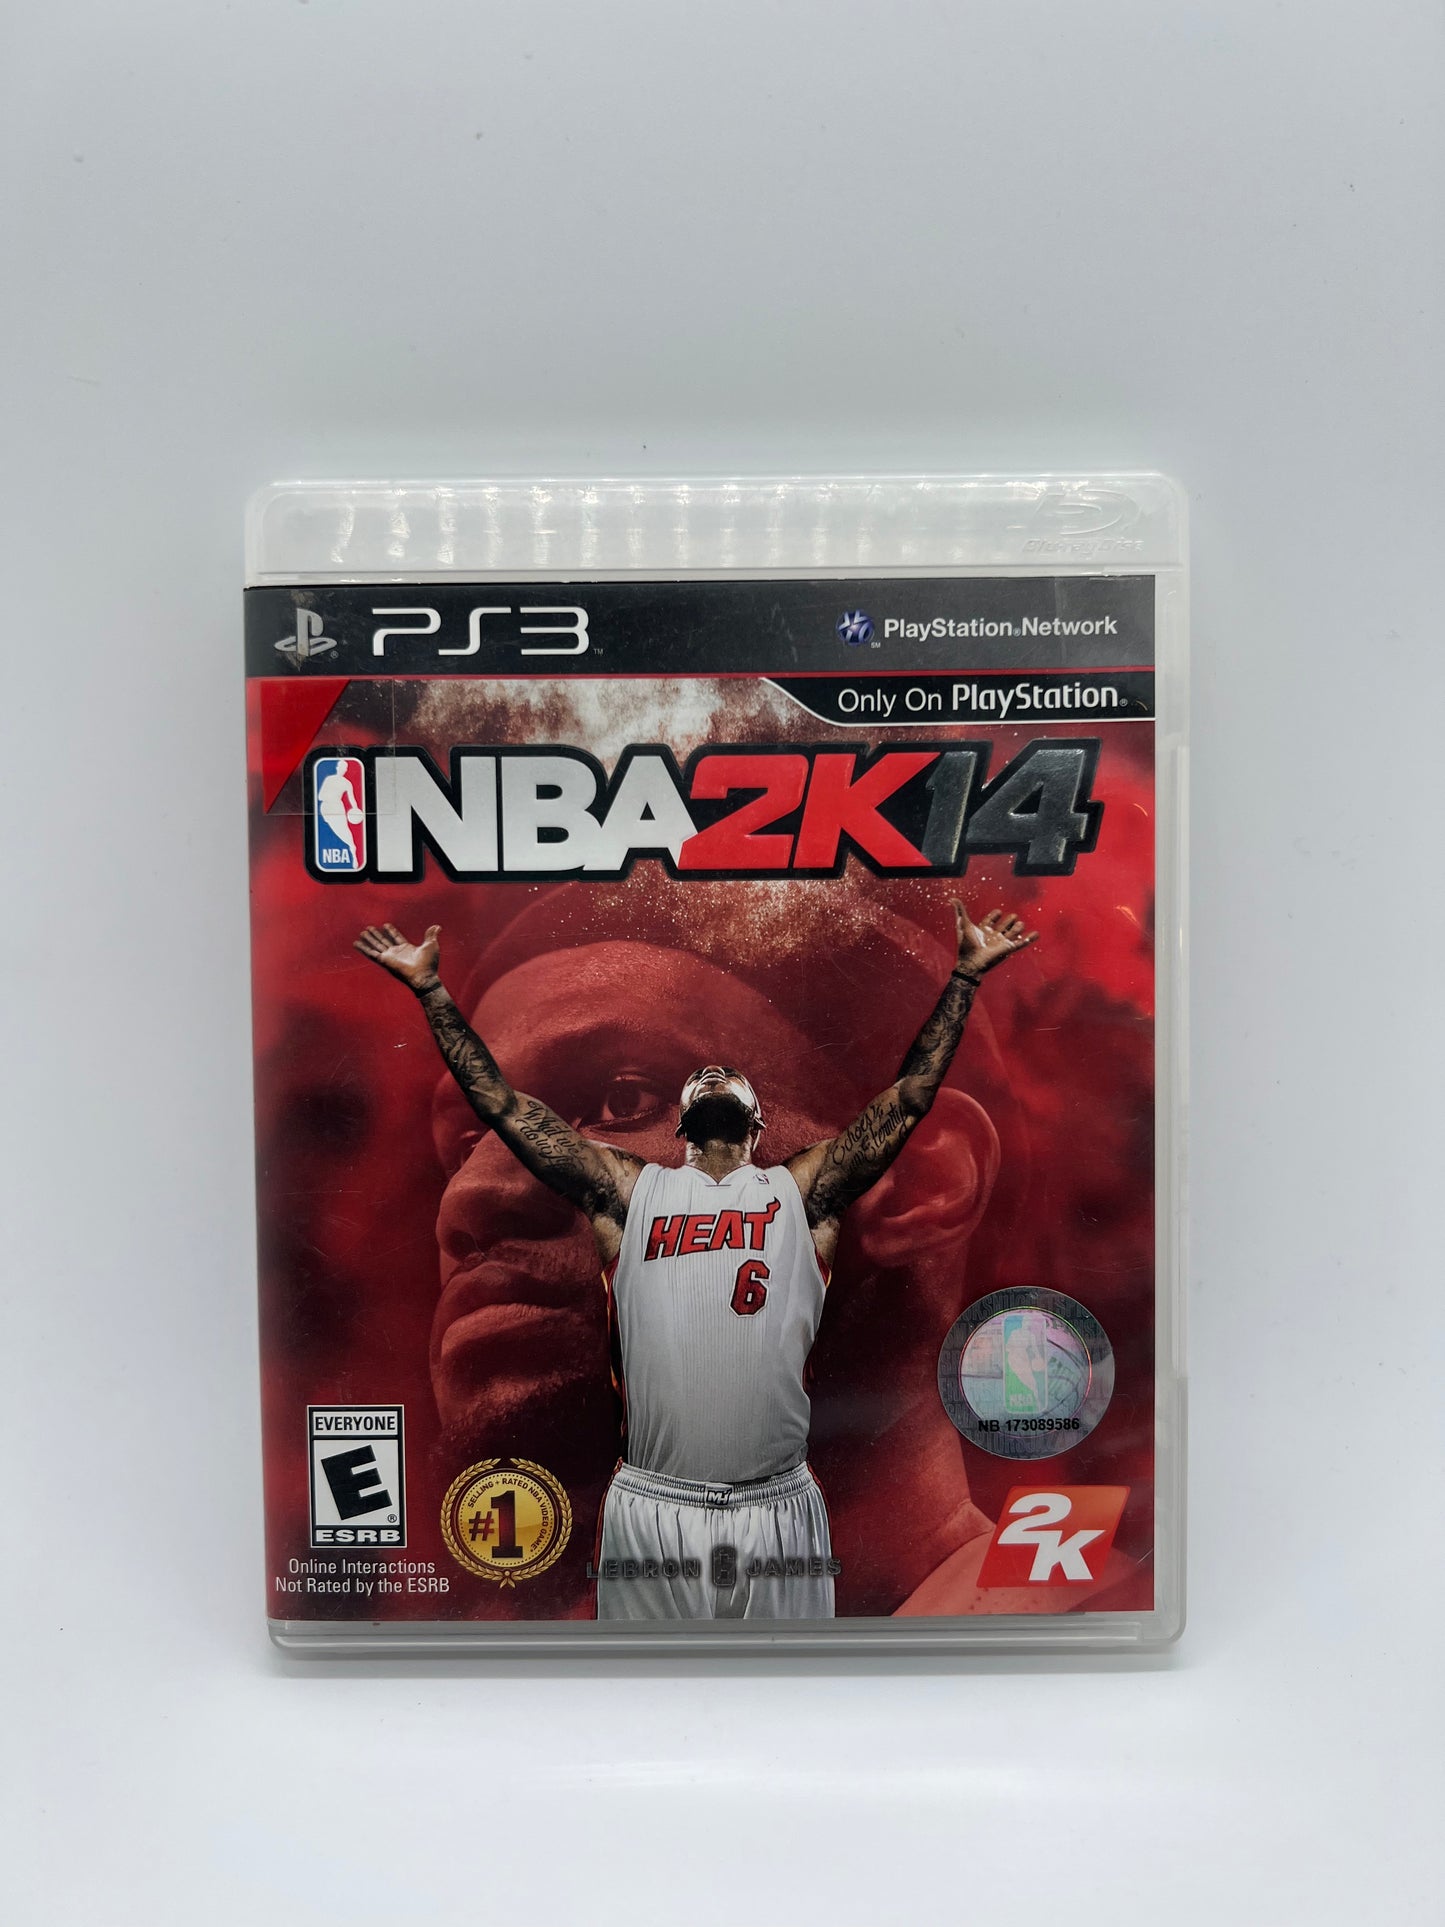 NBA 2K14 PS3